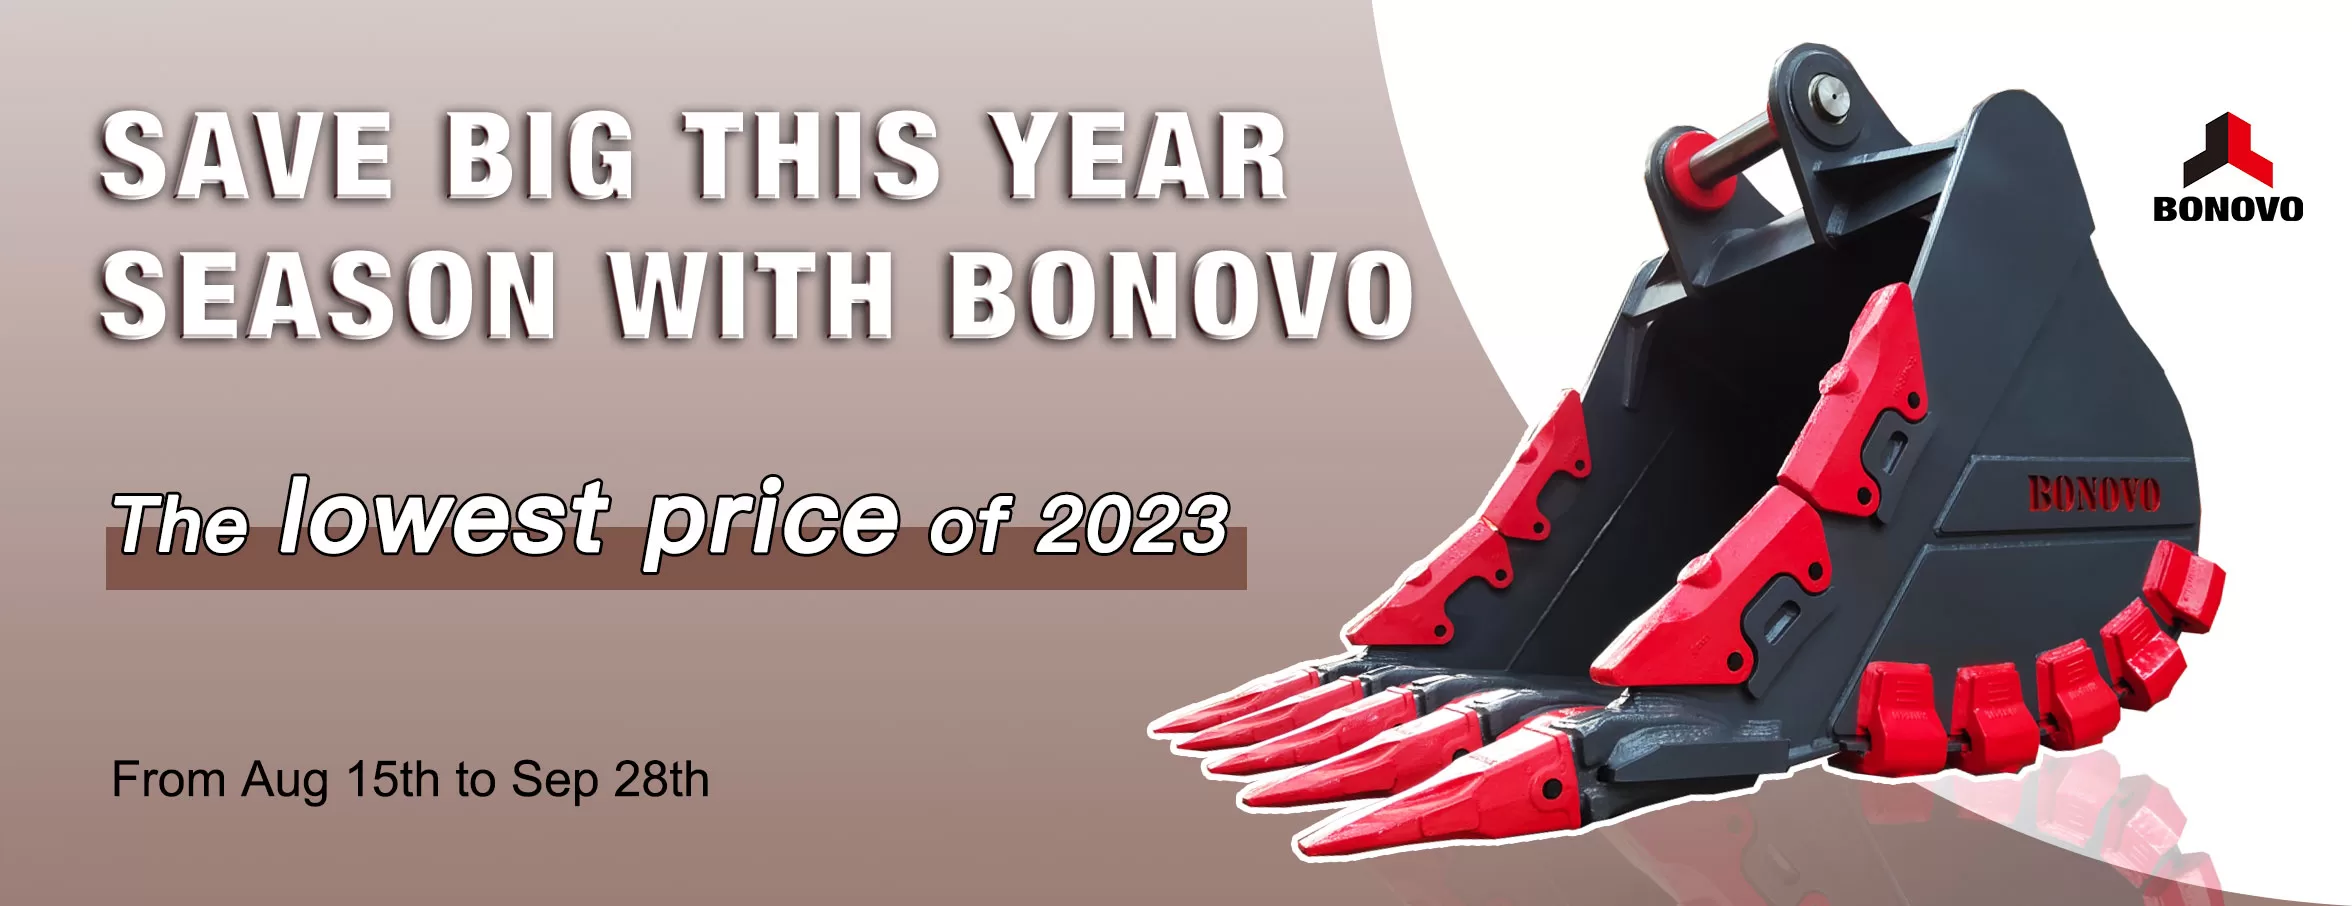 Big Promotion ——Save big this year season with Bonovo